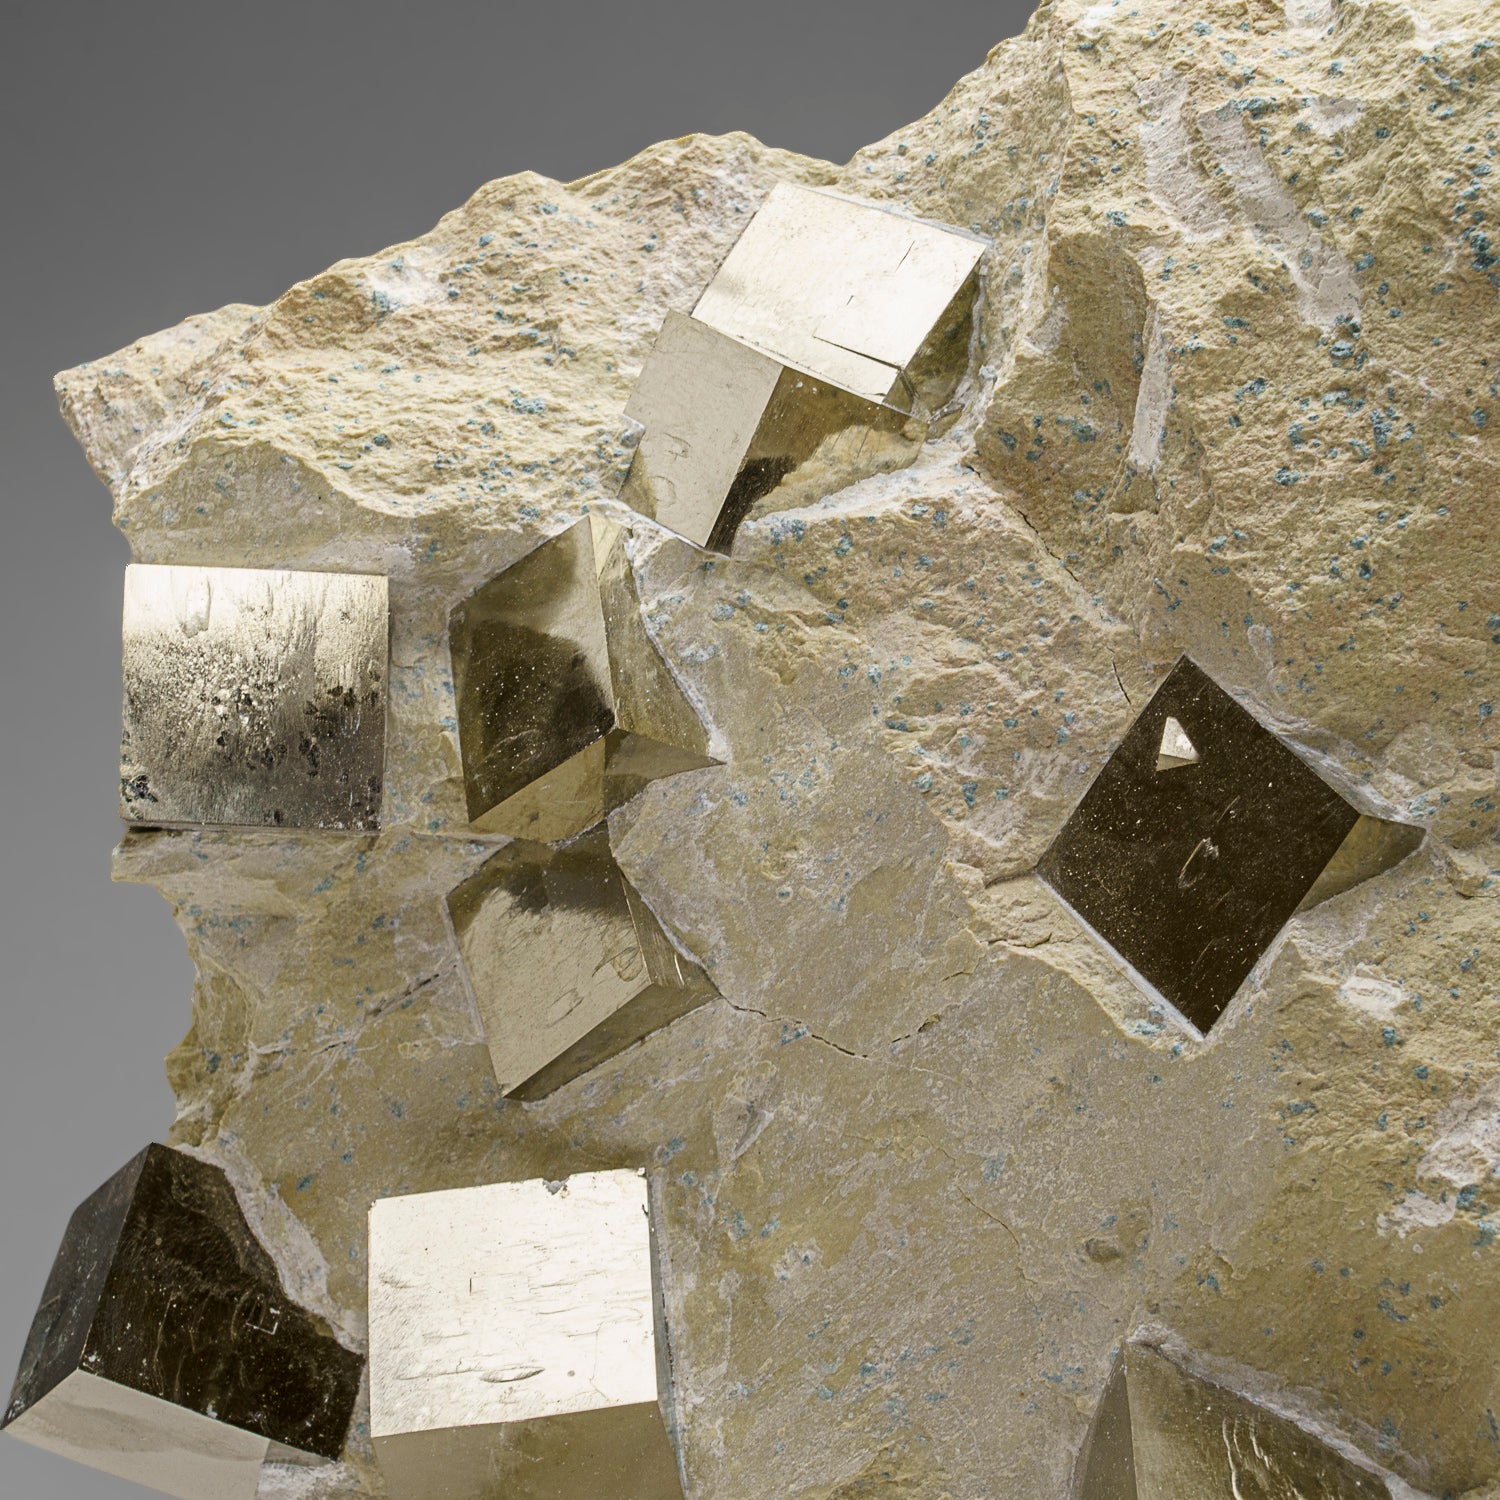 Genuine Pyrite Cubes on Basalt From Navajun, Spain (34.5 lbs)